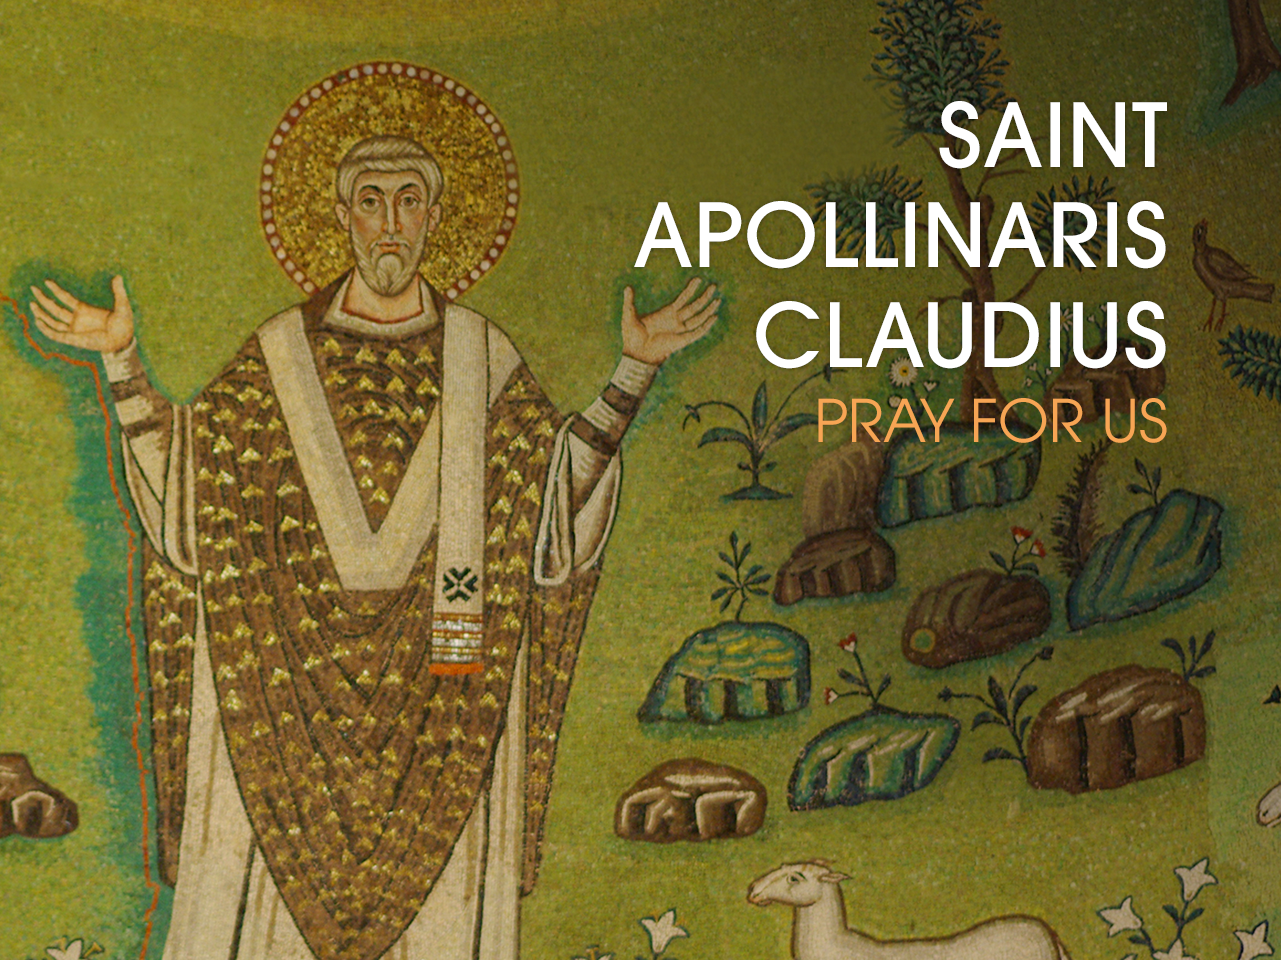 St. Apollinaris Claudius